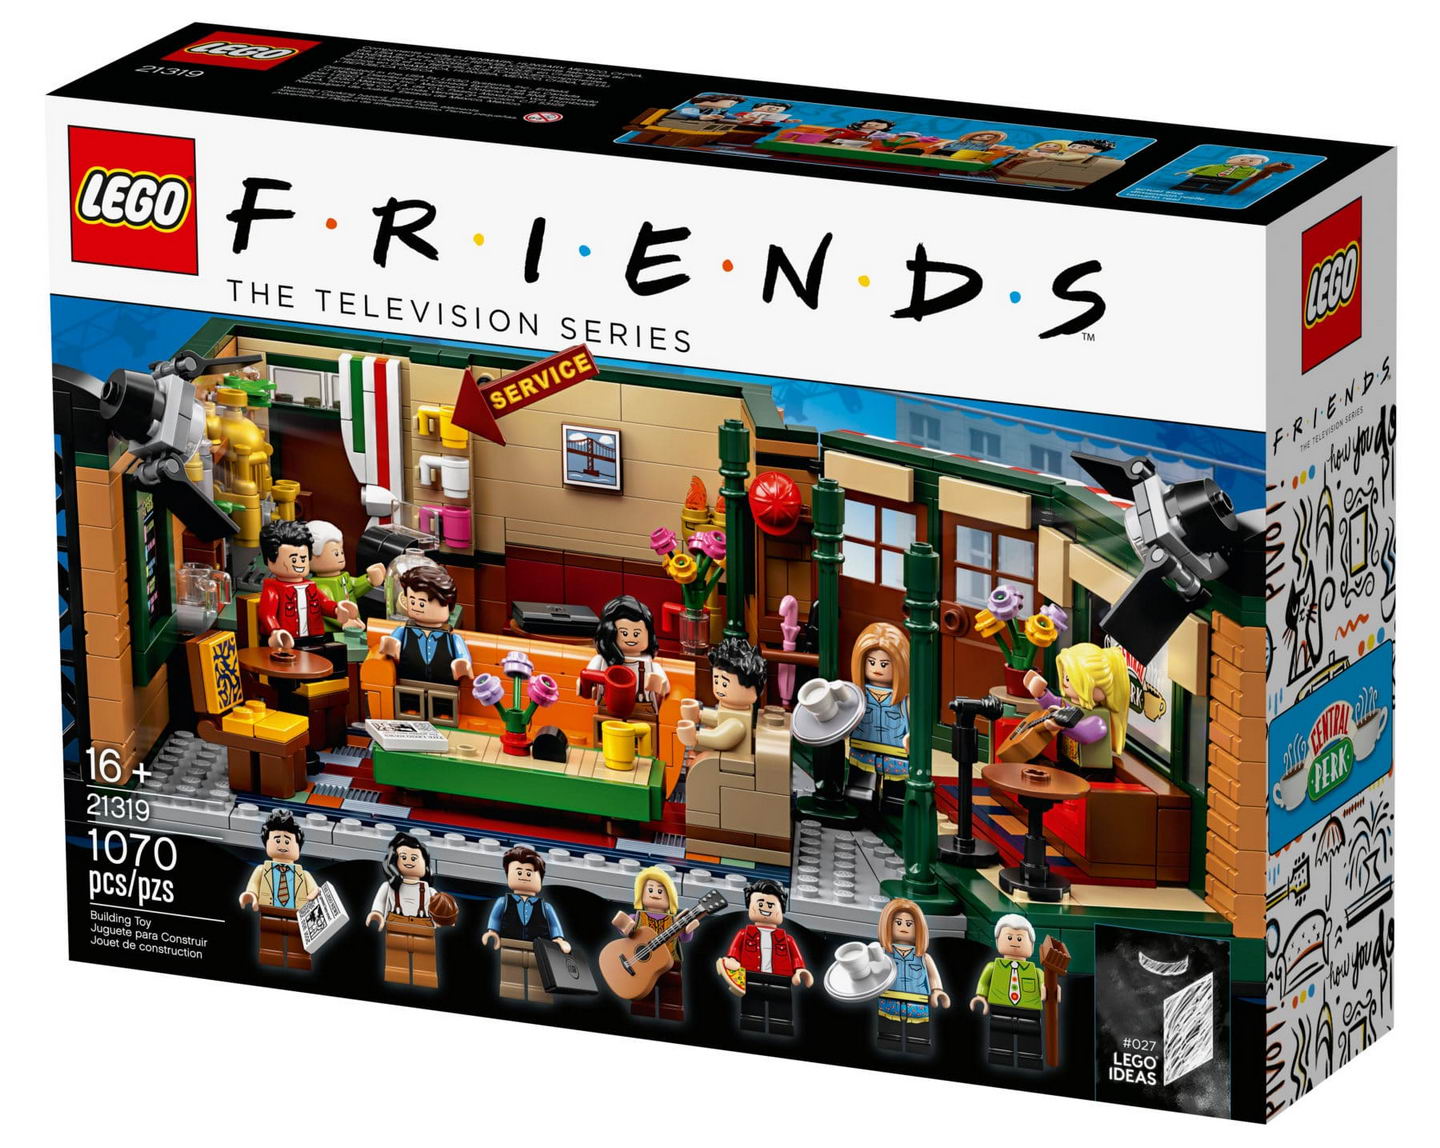 friends lego sets - Lego F.R.L.E.N.D.S The Television Series Service Friends we will 16 21319 1070 pcspzs Building Toy Juguete para Construir Jouet de construction Al Lego Ideas